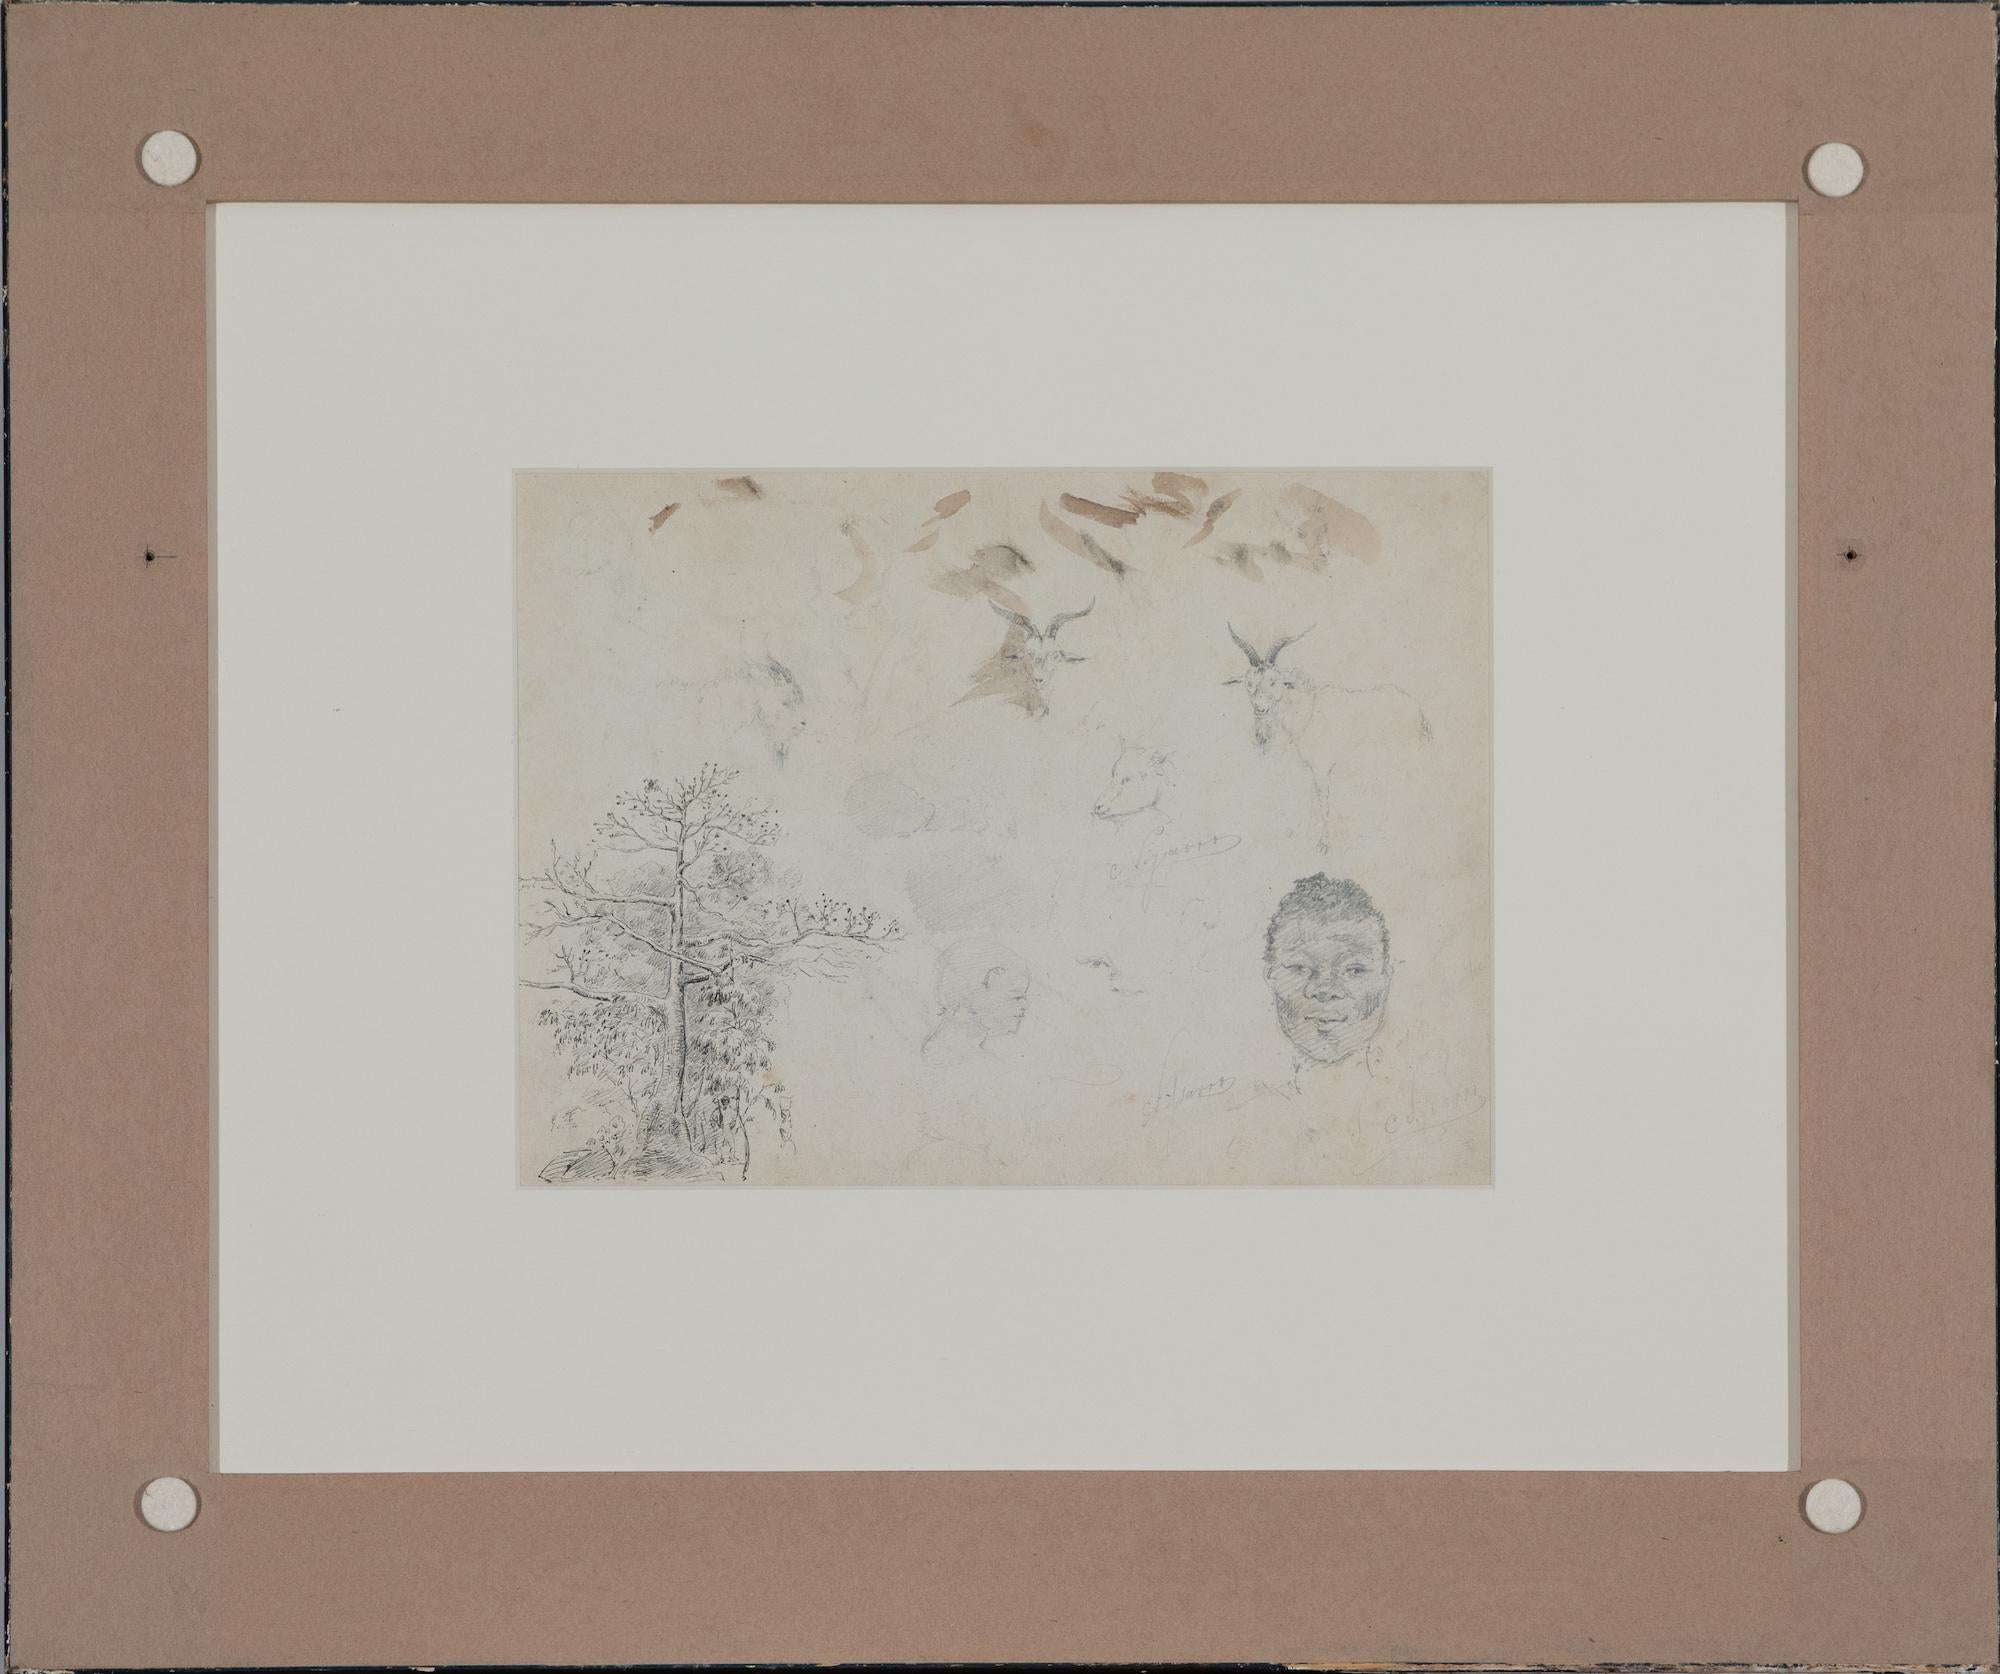 Études d'après nature by Camille Pissarro - Work on paper For Sale 2